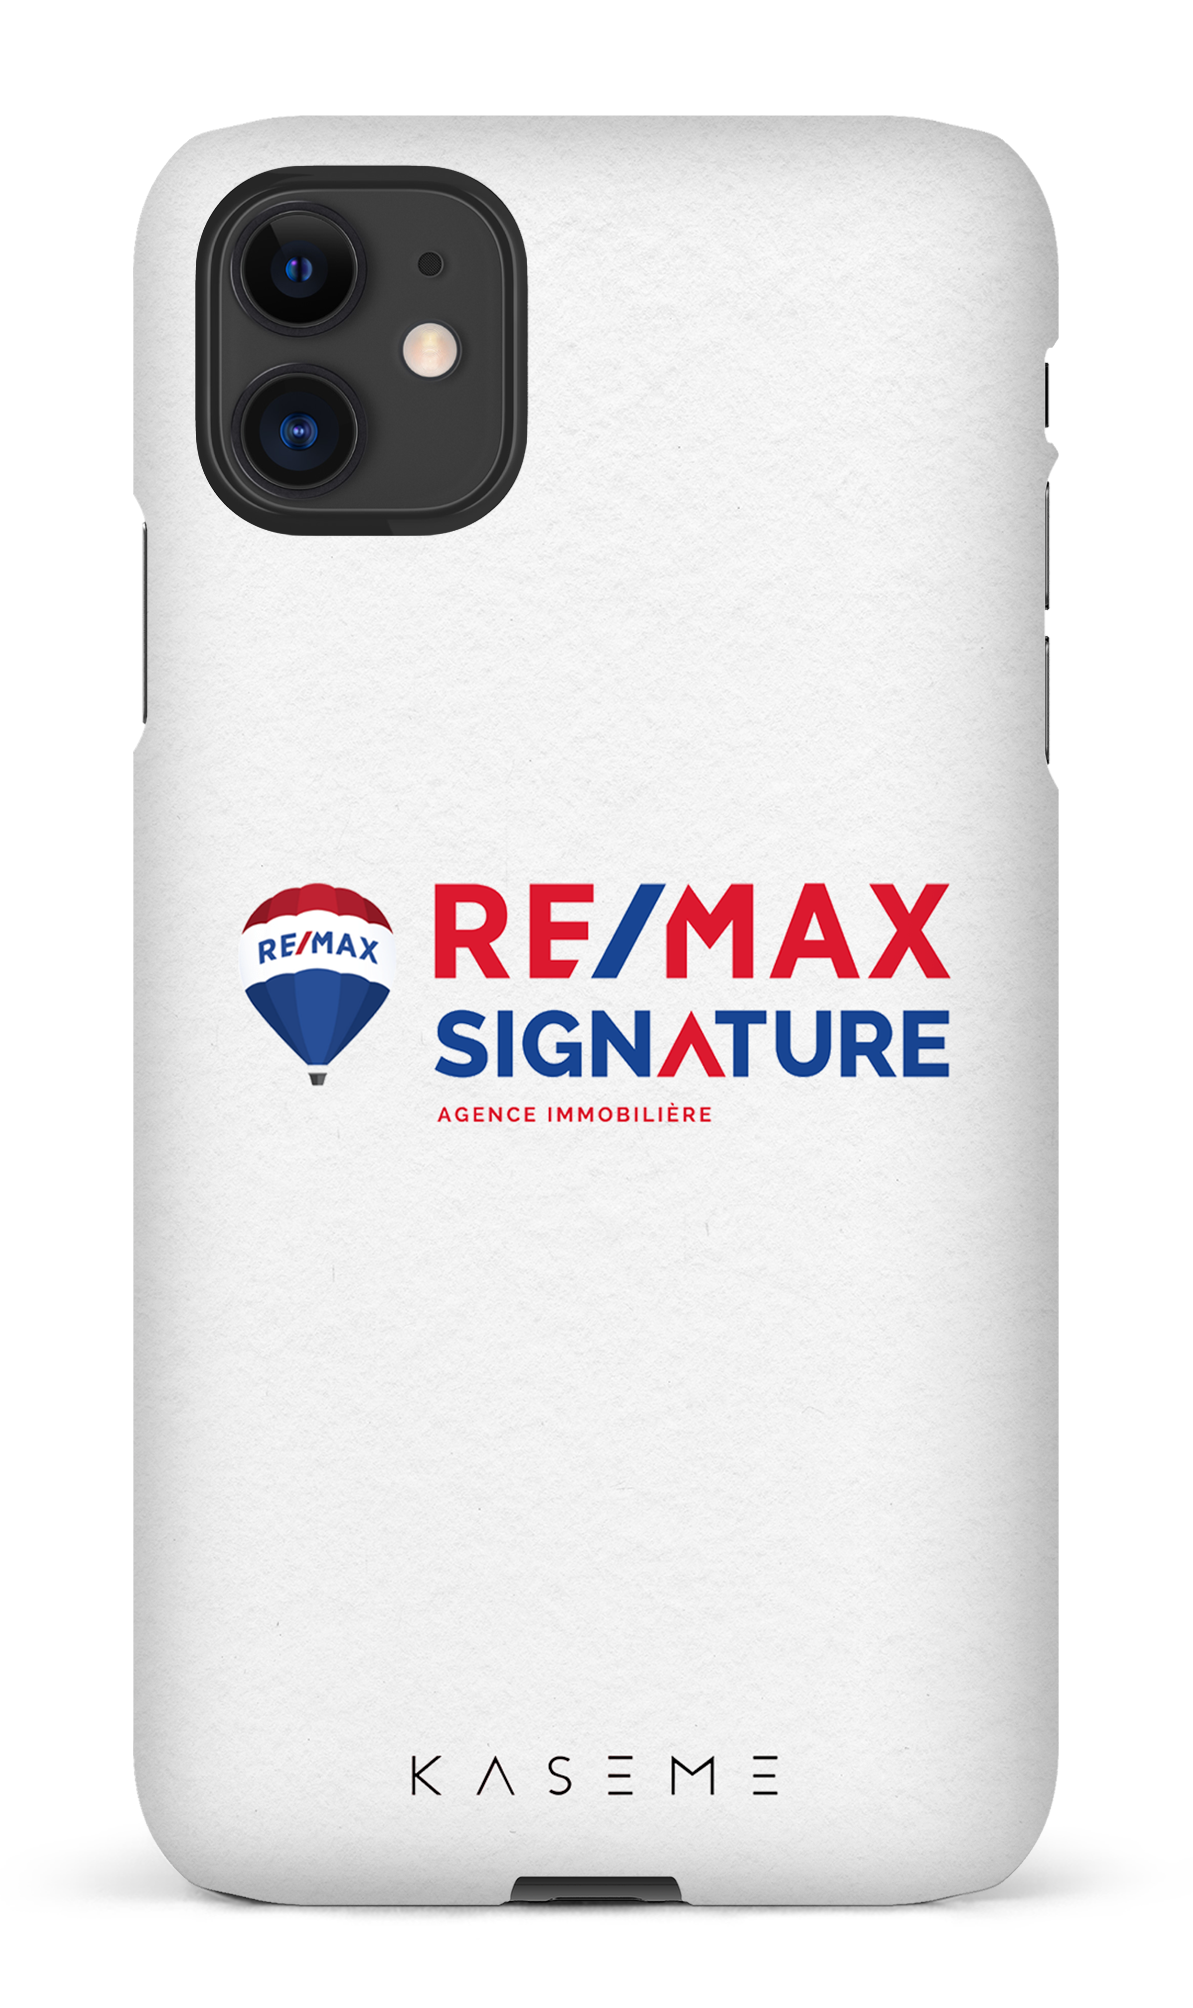 Remax Signature Blanc - iPhone 11